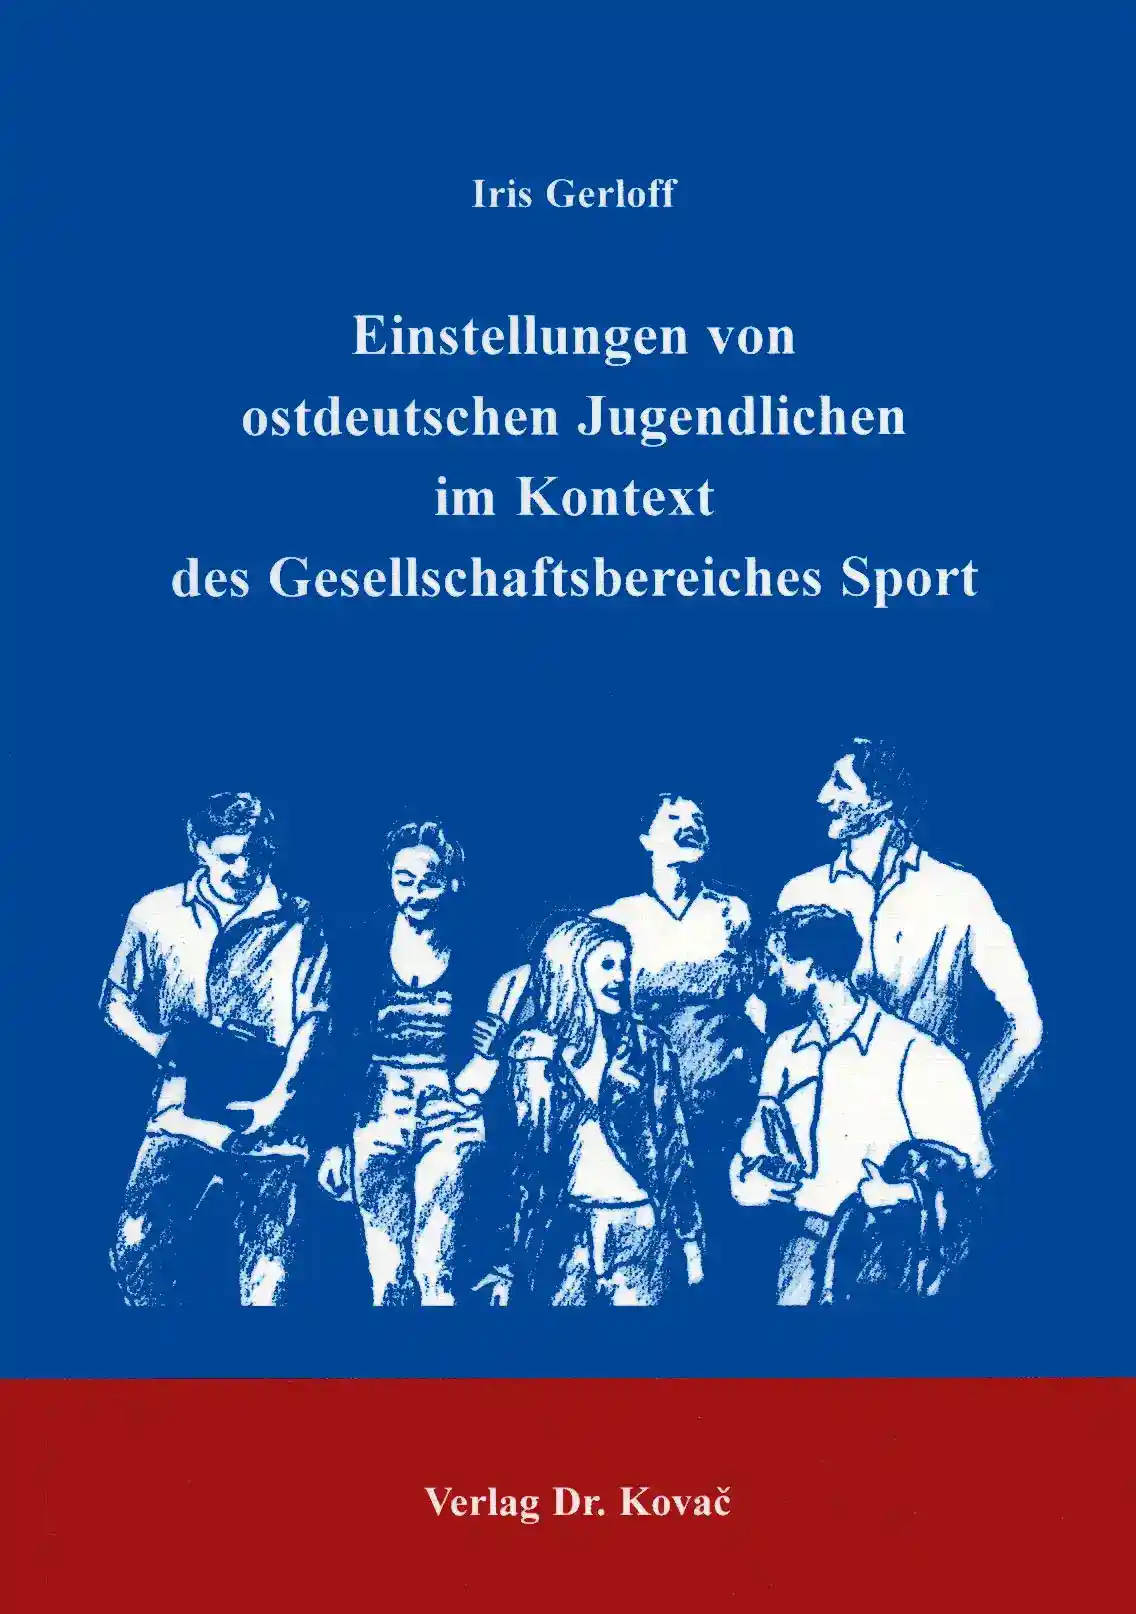 Einstellungen von ostdeutschen Jugendlichen im Kontext des Gesellschaftsbereiches Sport (Dissertation)